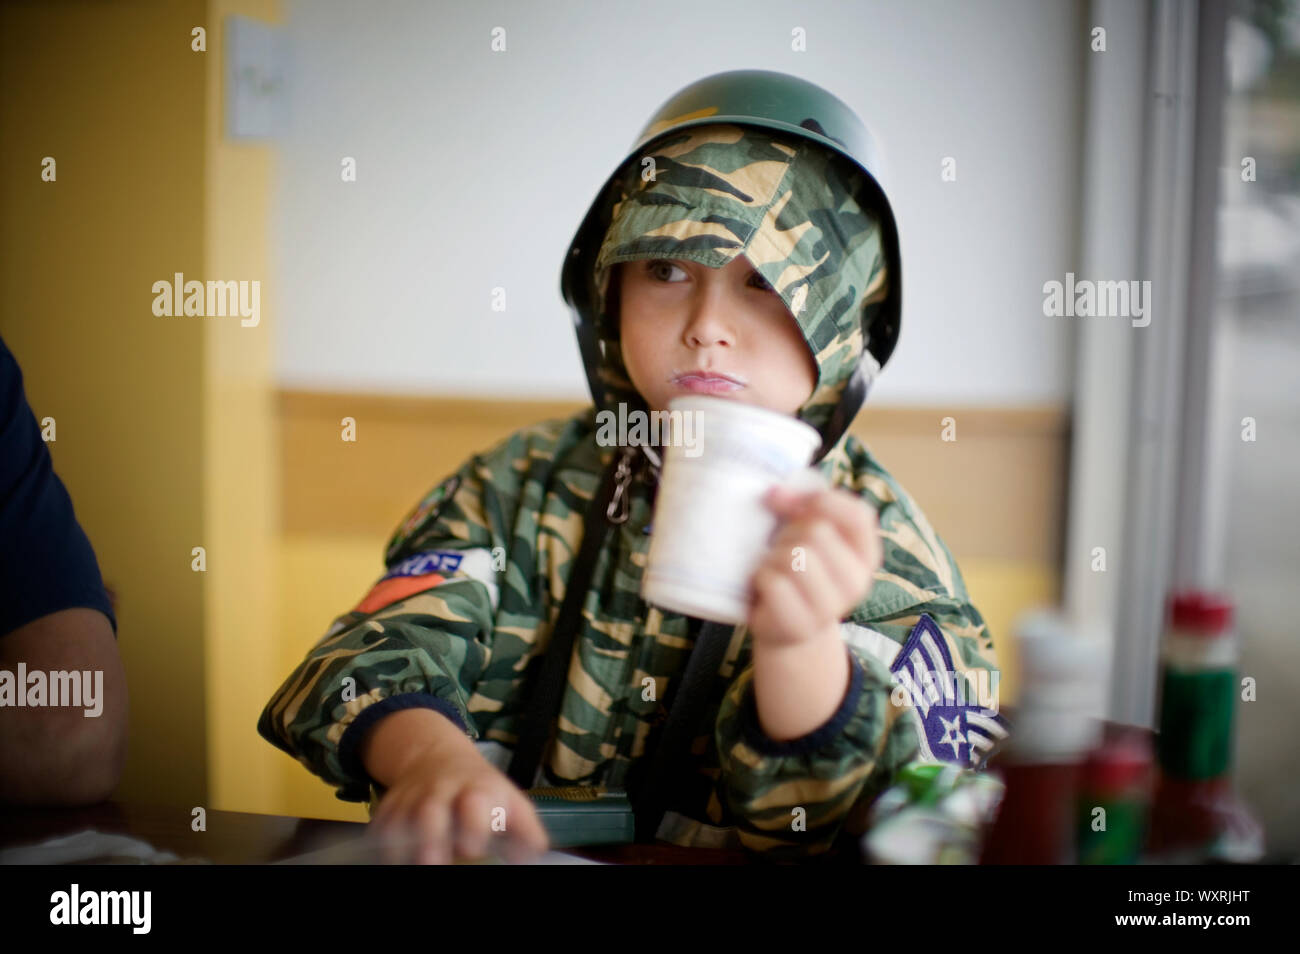 Junge Holding eine Tasse, während das Tragen eines Helmes und Camouflage Kleidung. Stockfoto